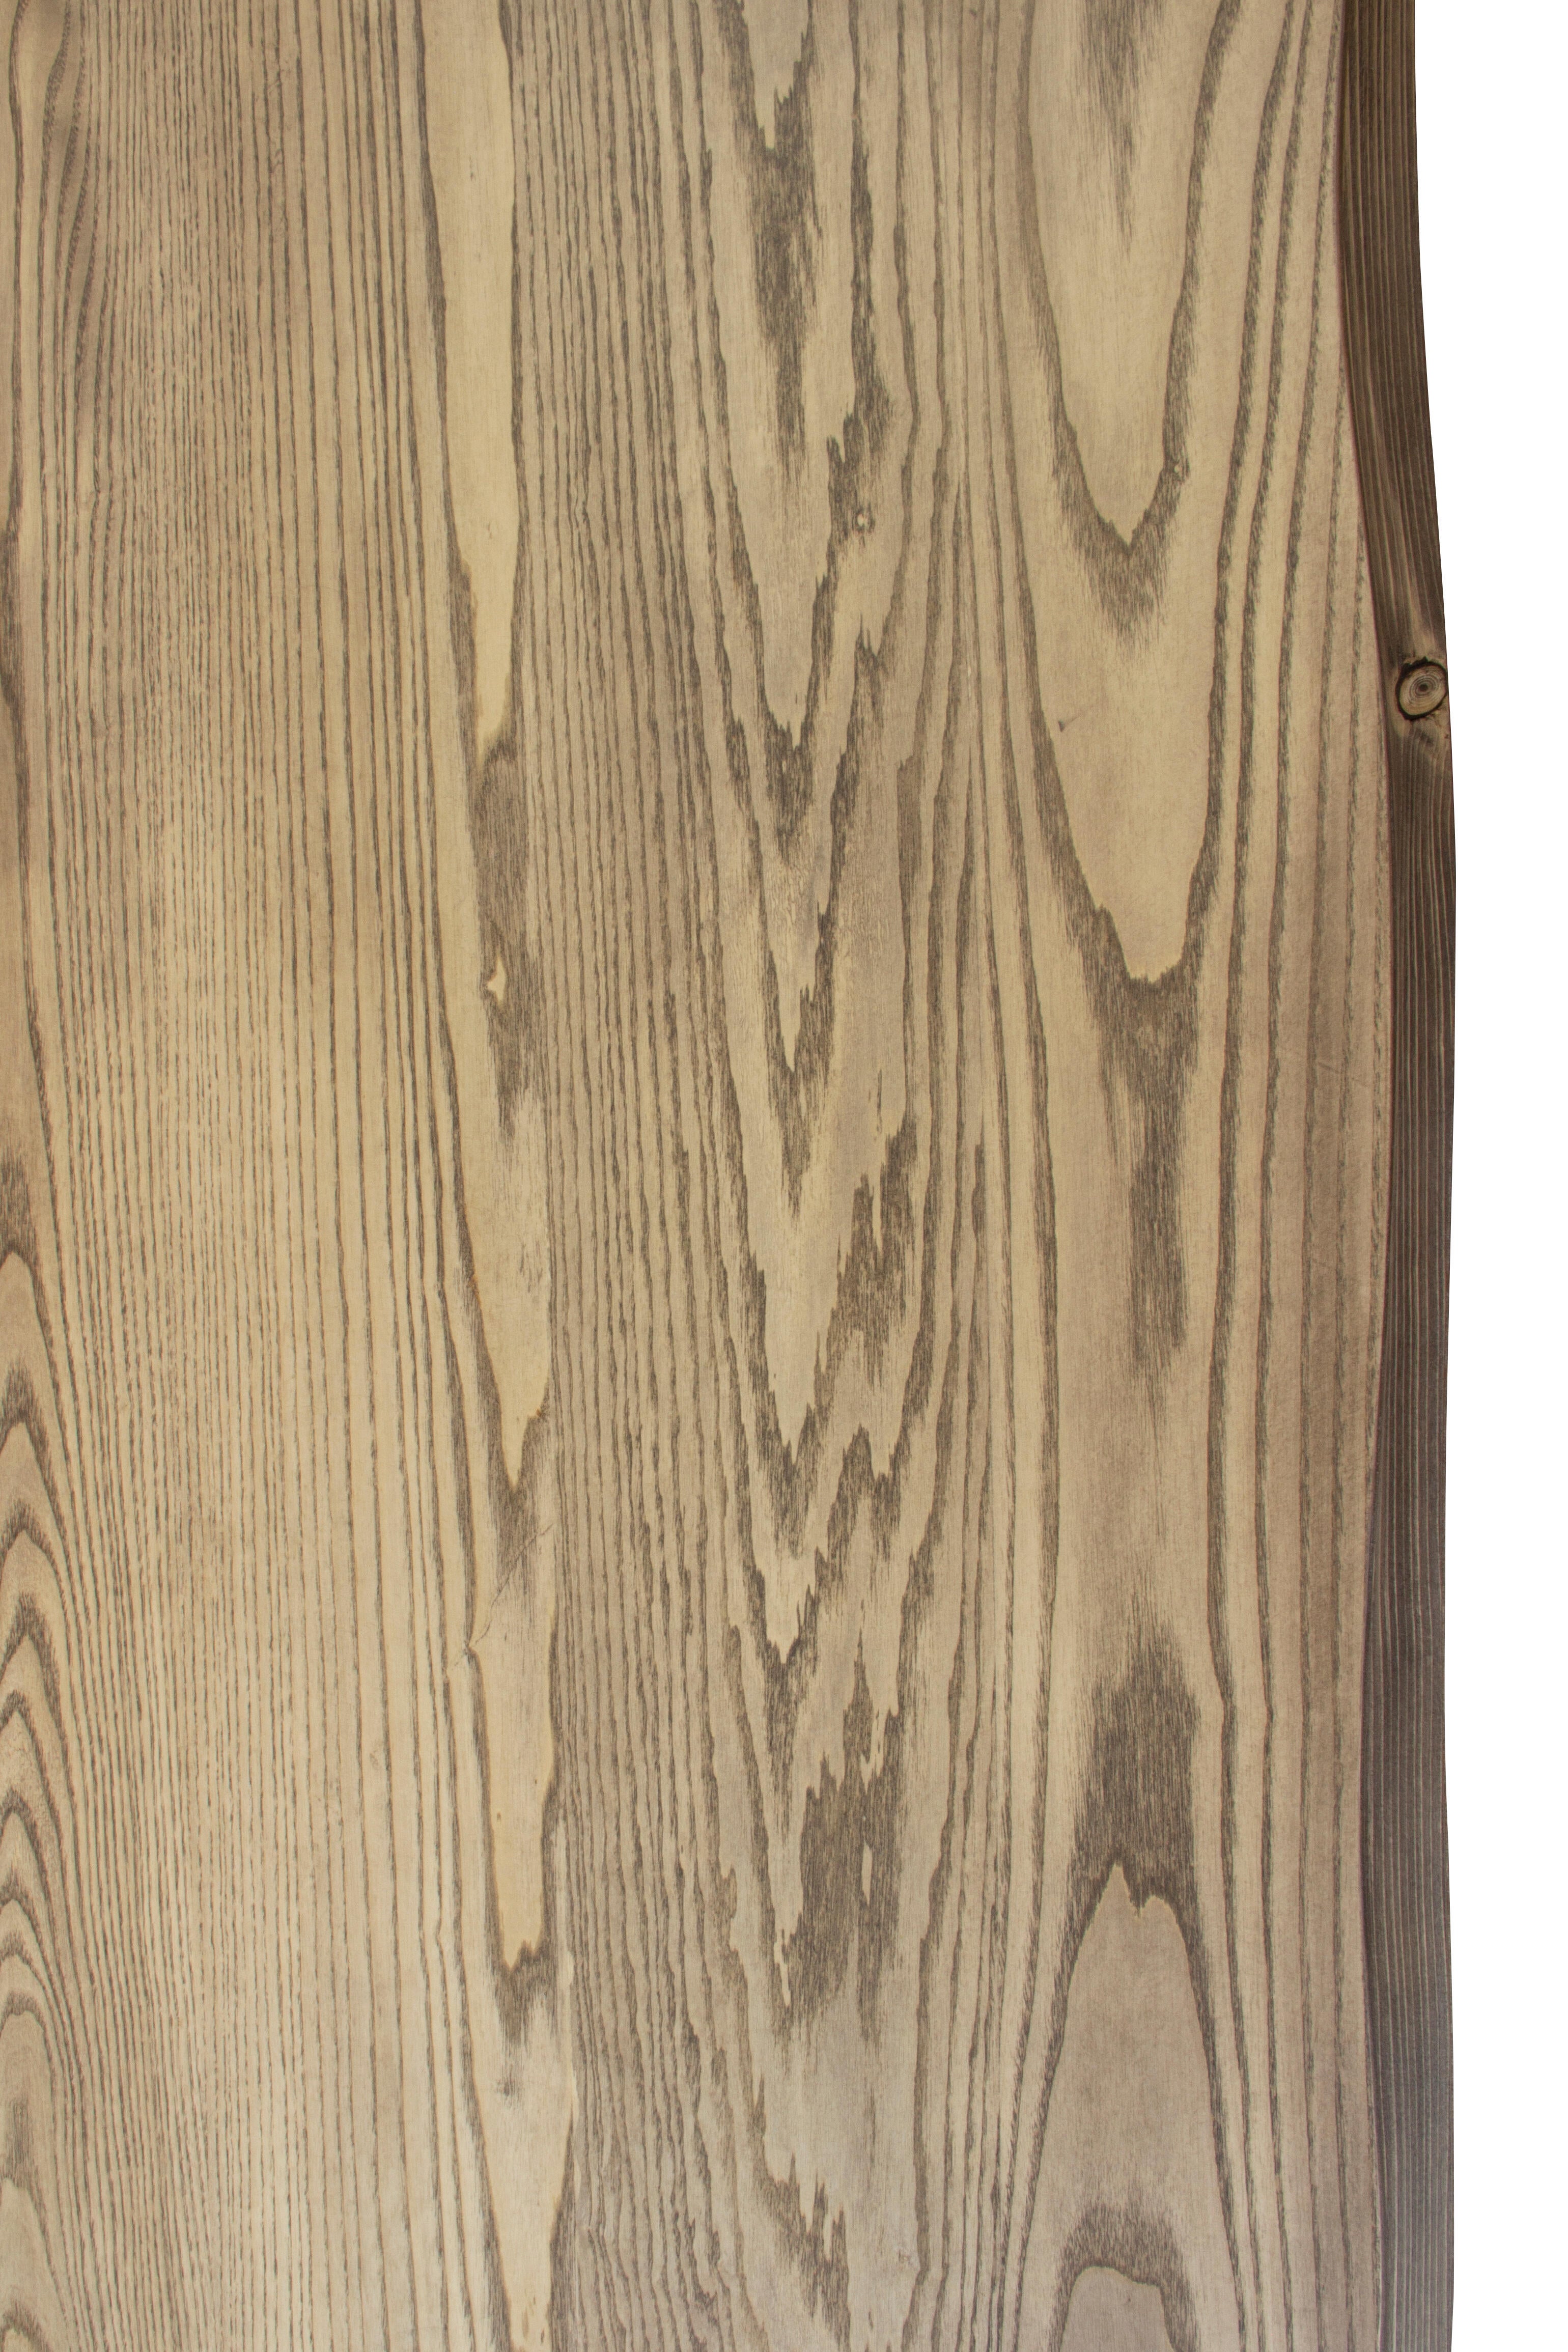 Tablero mesa rechapado en madera de fresno 92,5x185x4,8 cm lados forma árbol